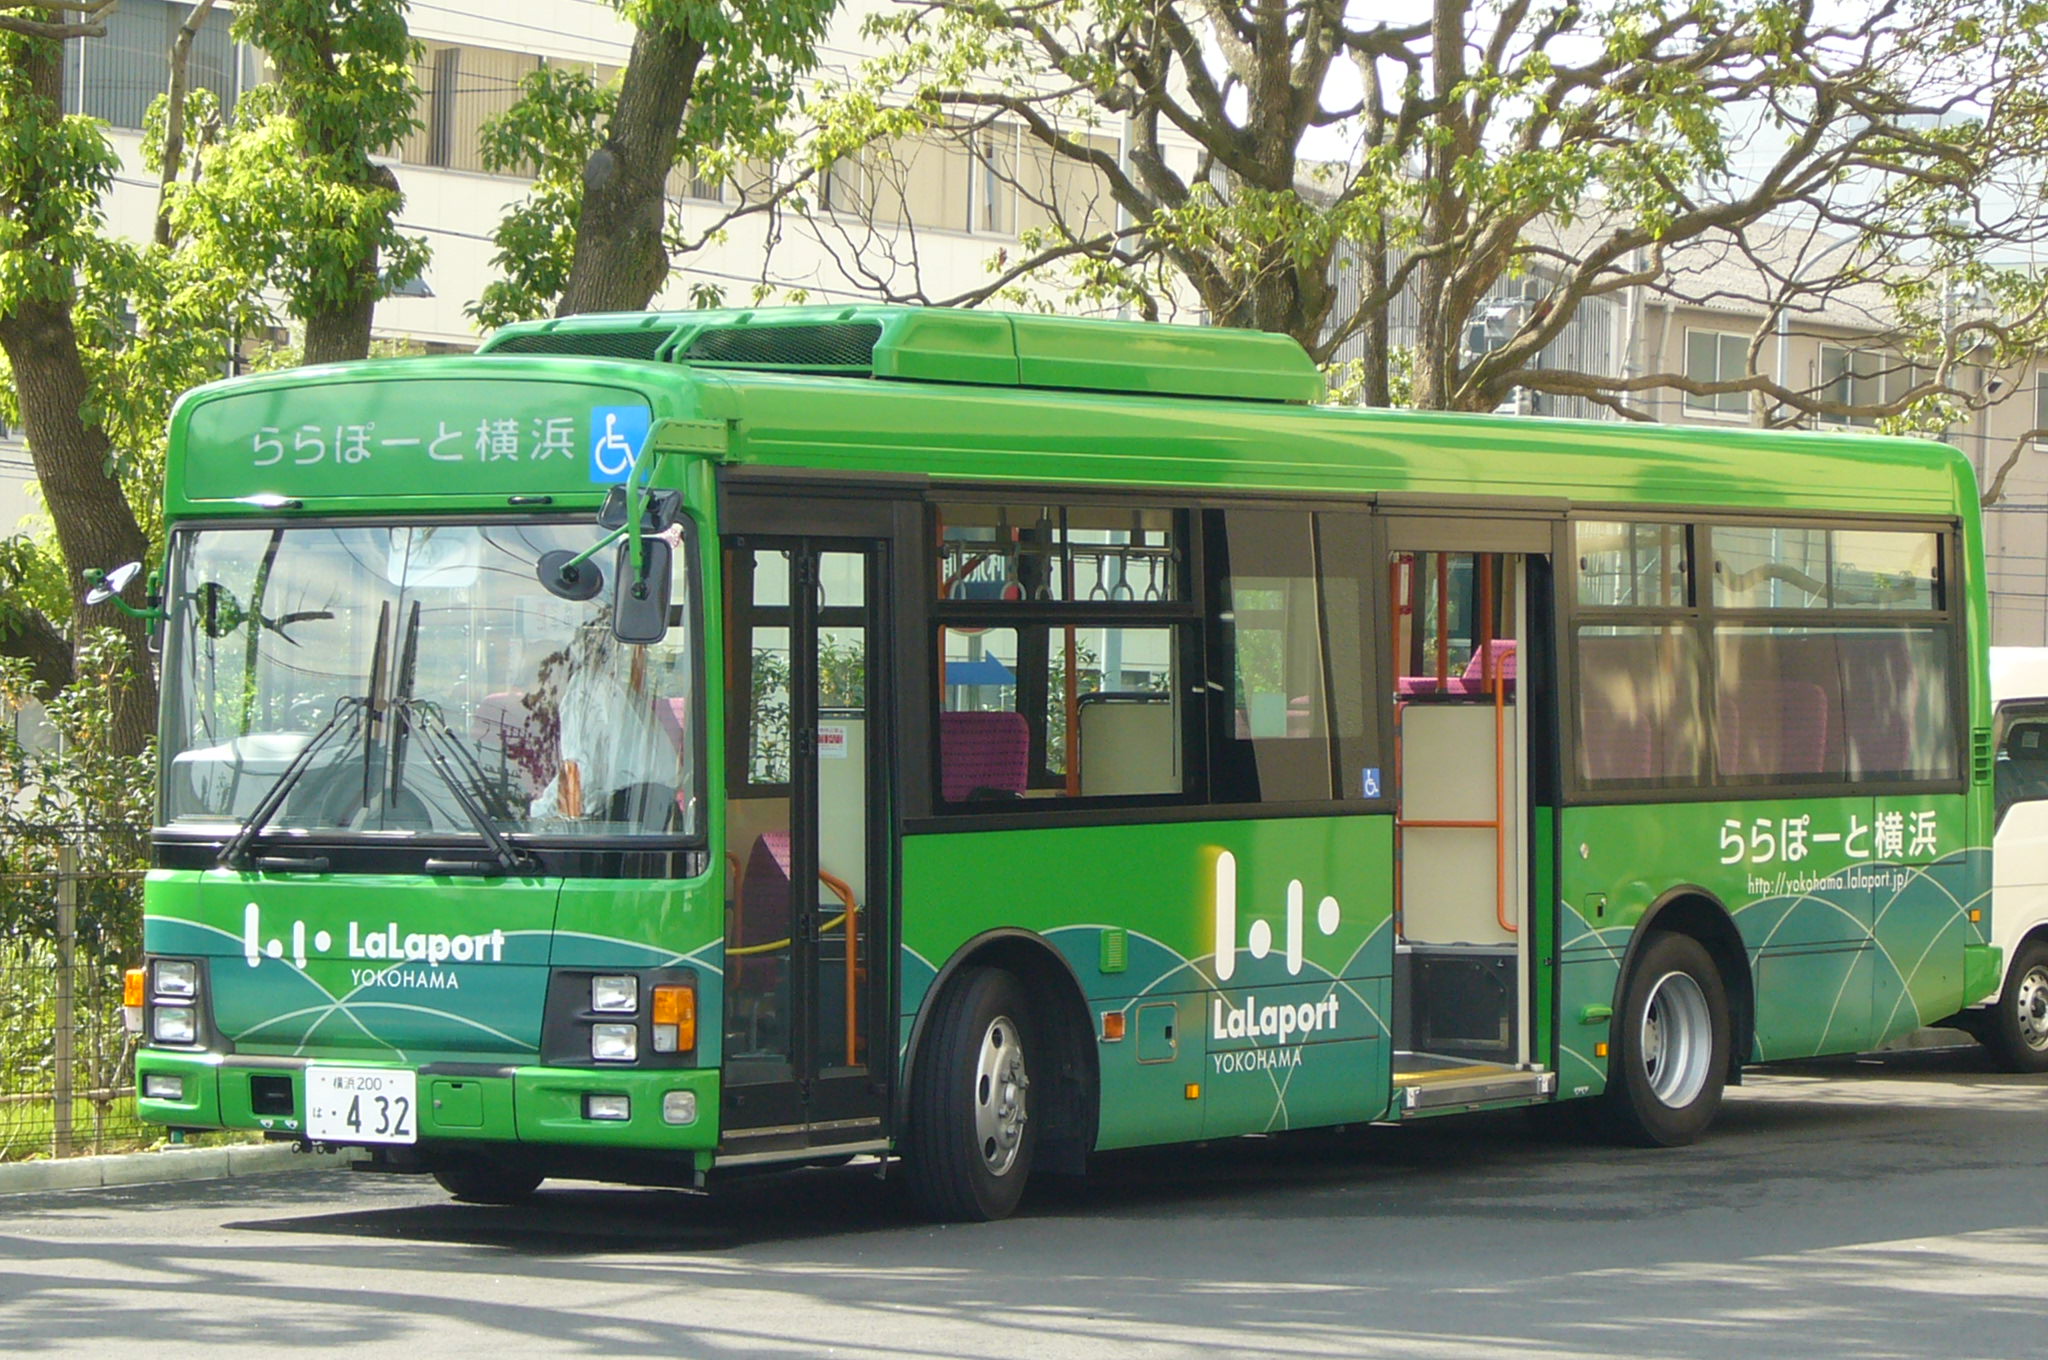 ららぽーと横浜シャトルバス １０月２２日で終了 セン南 川和 鴨居開発ものがたり